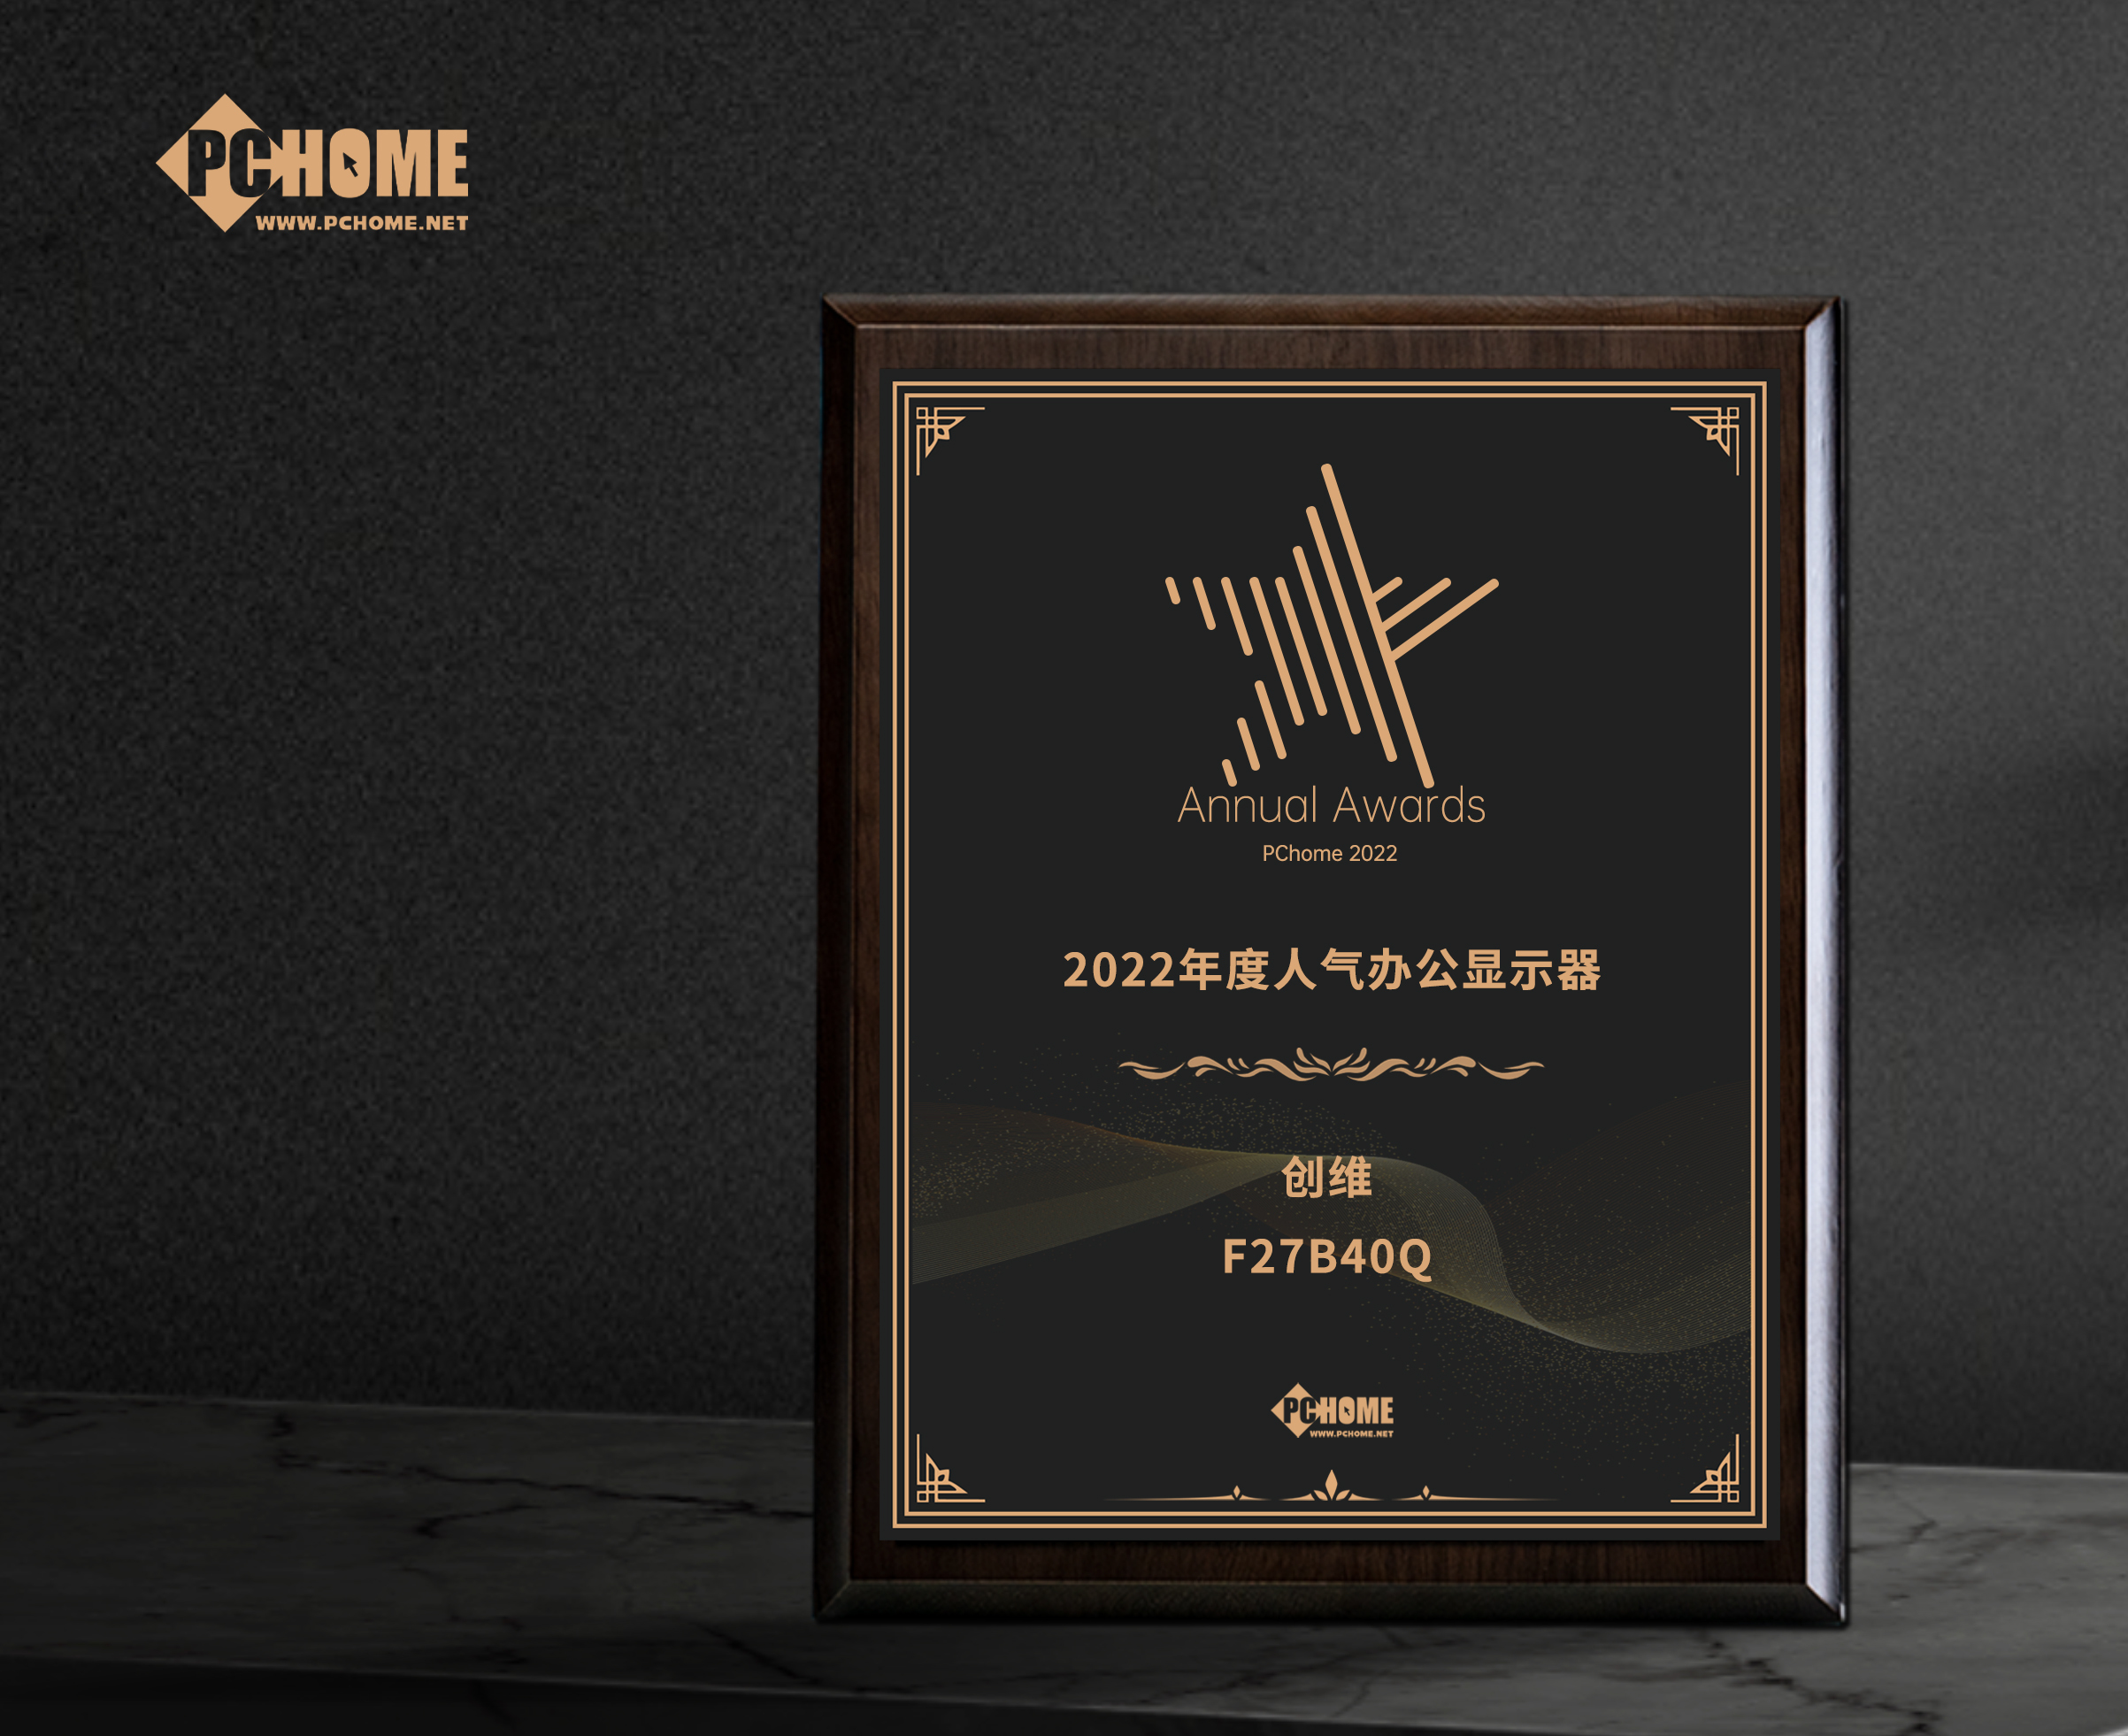 丹江口市創維F27B40Q獲得PChome2022年度人氣辦公顯示器獎項